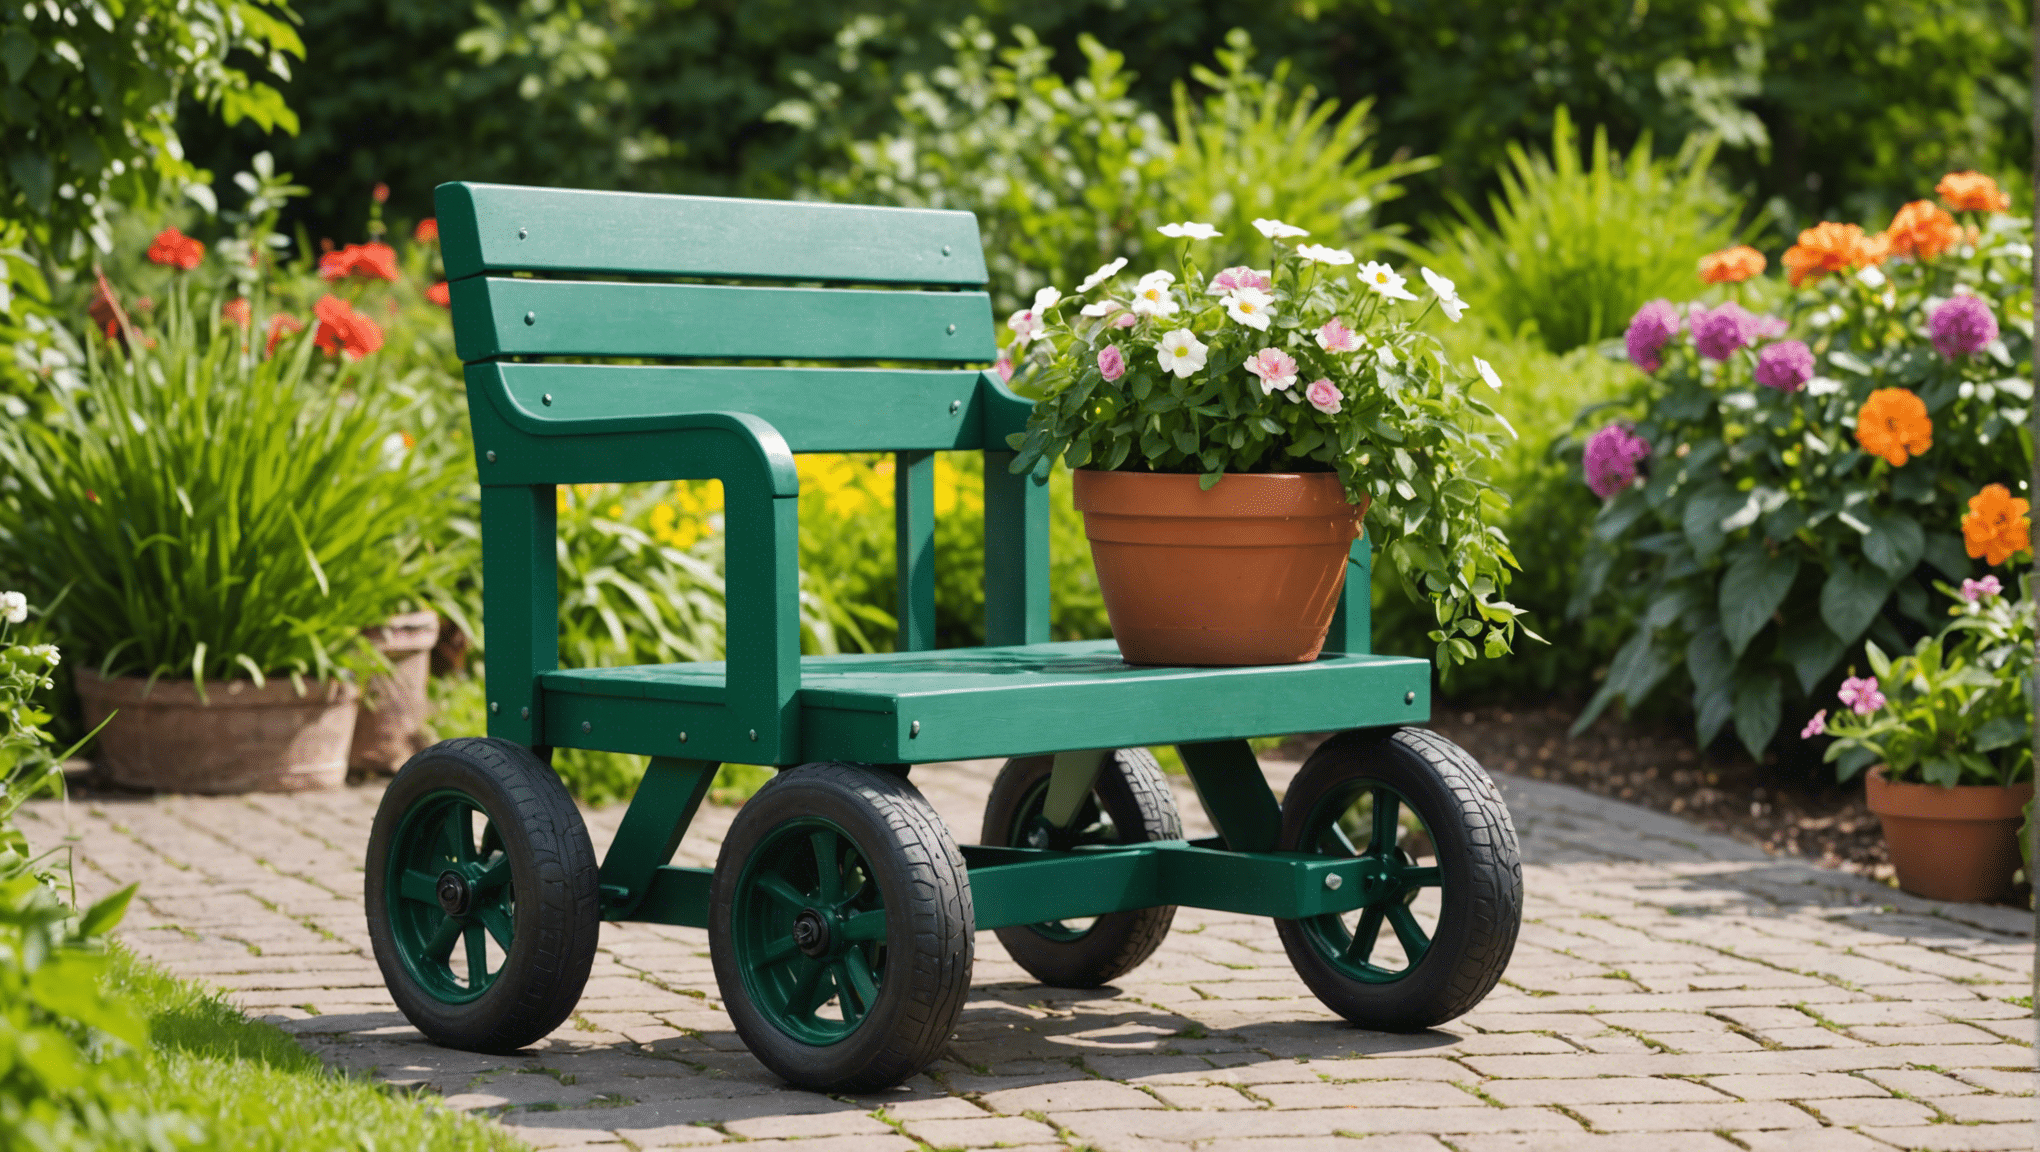 odkrijte prednosti naložbe v vrtni sedež s kolesi in spremenite svojo vrtnarsko izkušnjo. ugotovite, kako lahko to vsestransko orodje izboljša vaše udobje in produktivnost na vrtu.